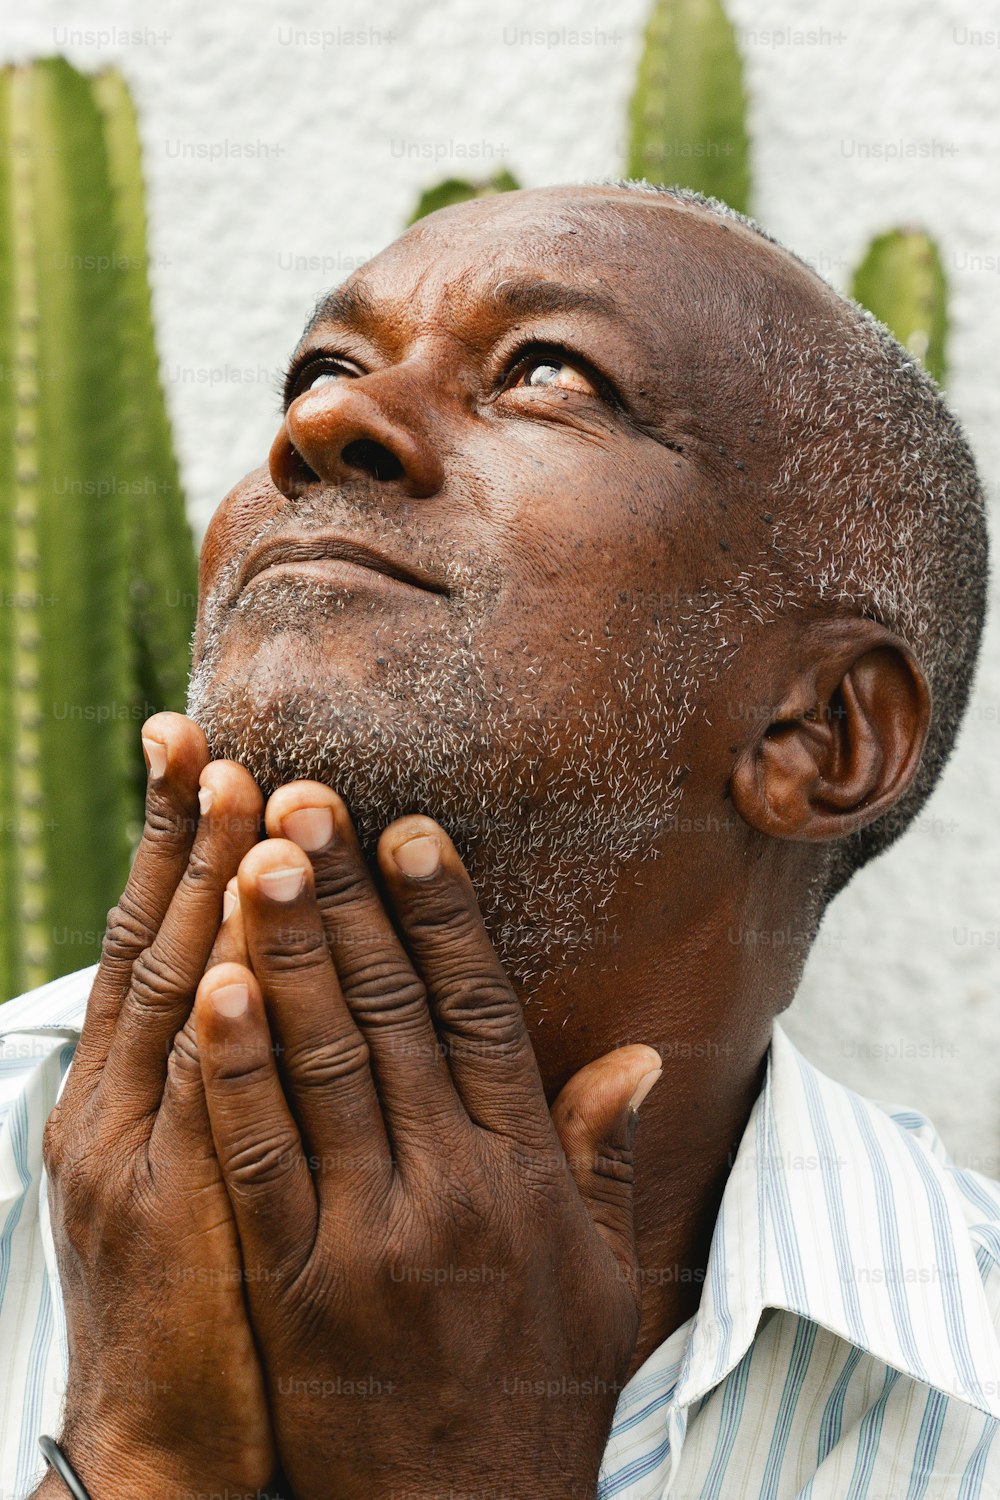 Un hombre está rezando frente a un cactus